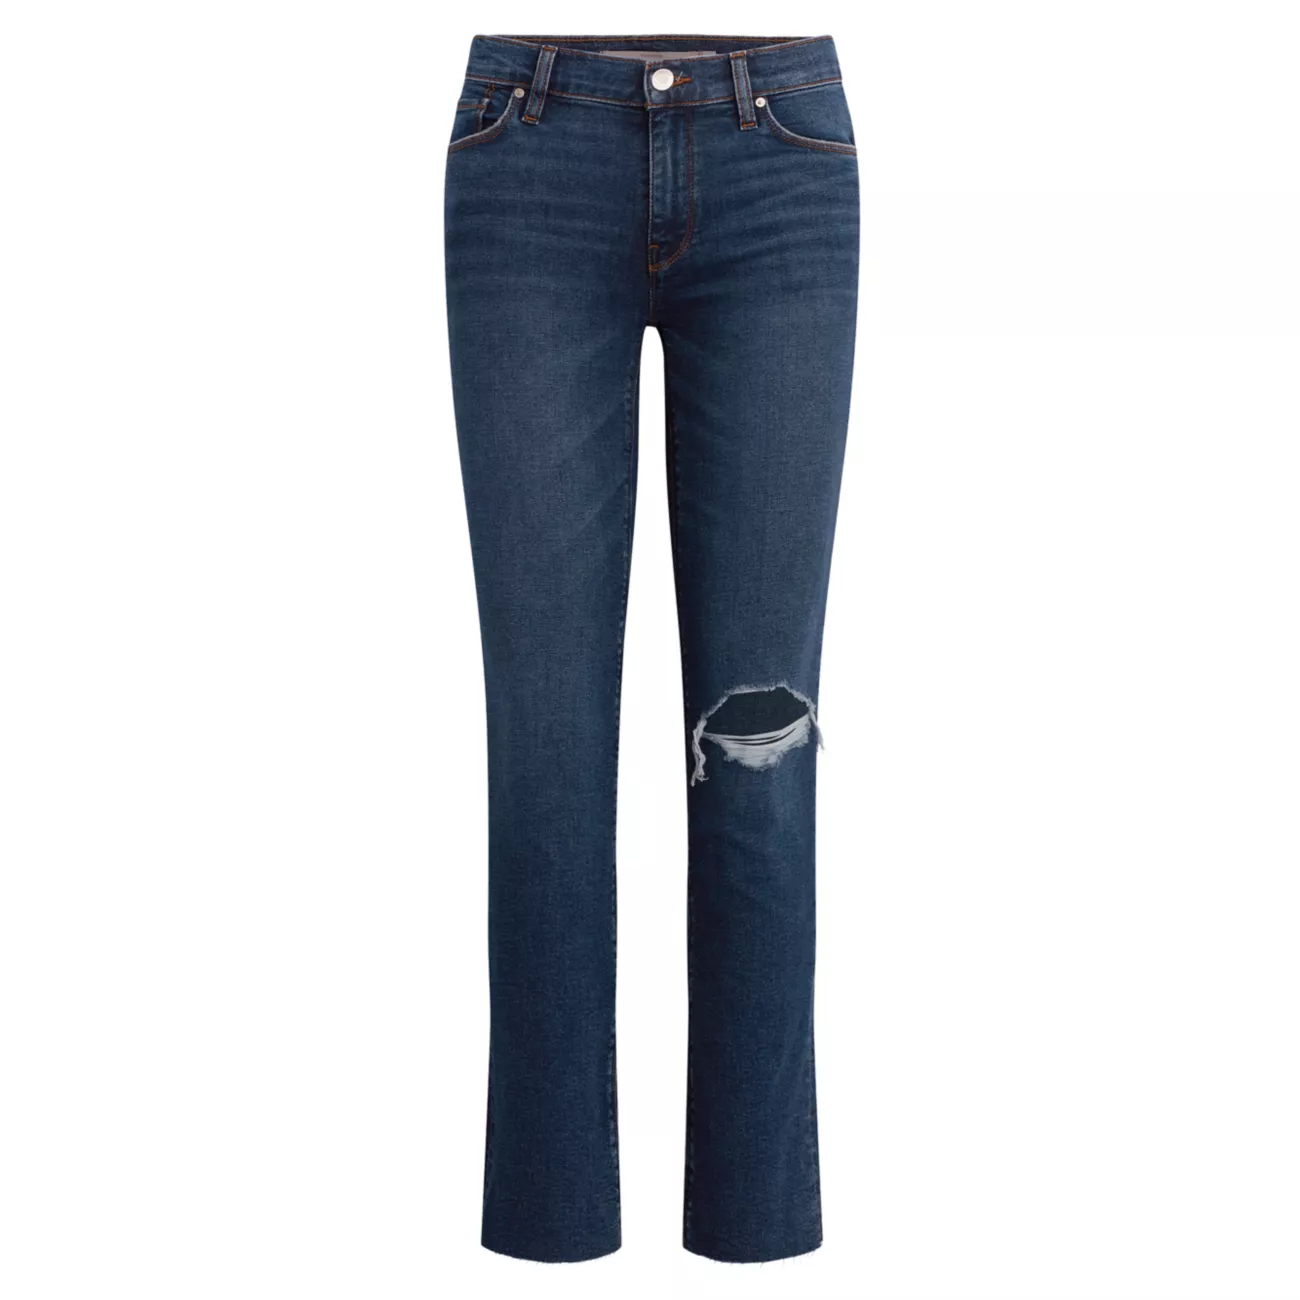 Прямые джинсы Nico со средней посадкой Hudson Jeans